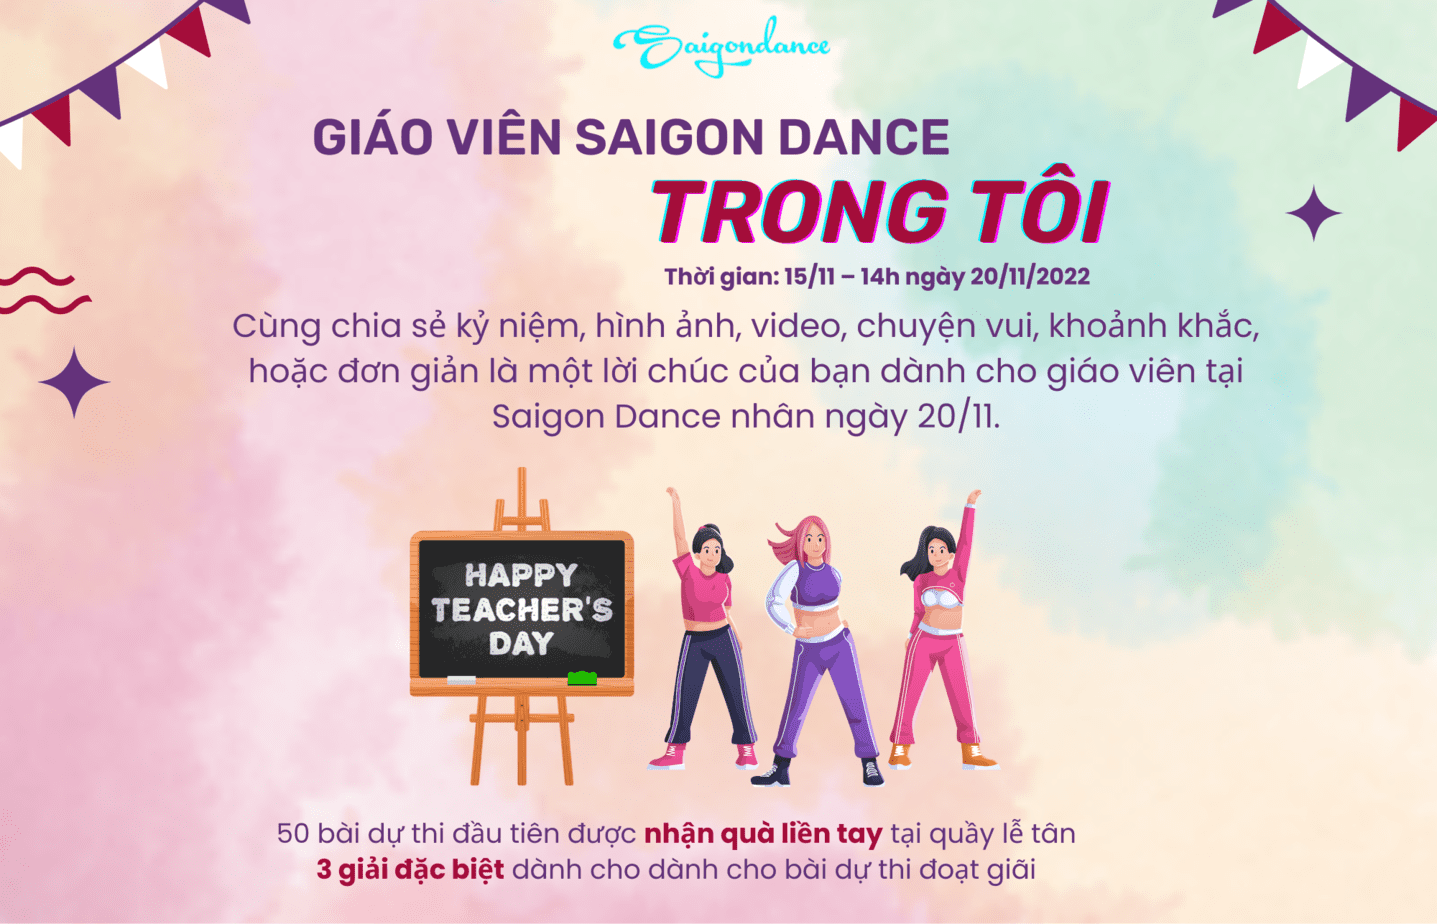 Nhận quà liền tay cùng Cuộc thi "Giáo viên Saigon Dance trong tôi" 11